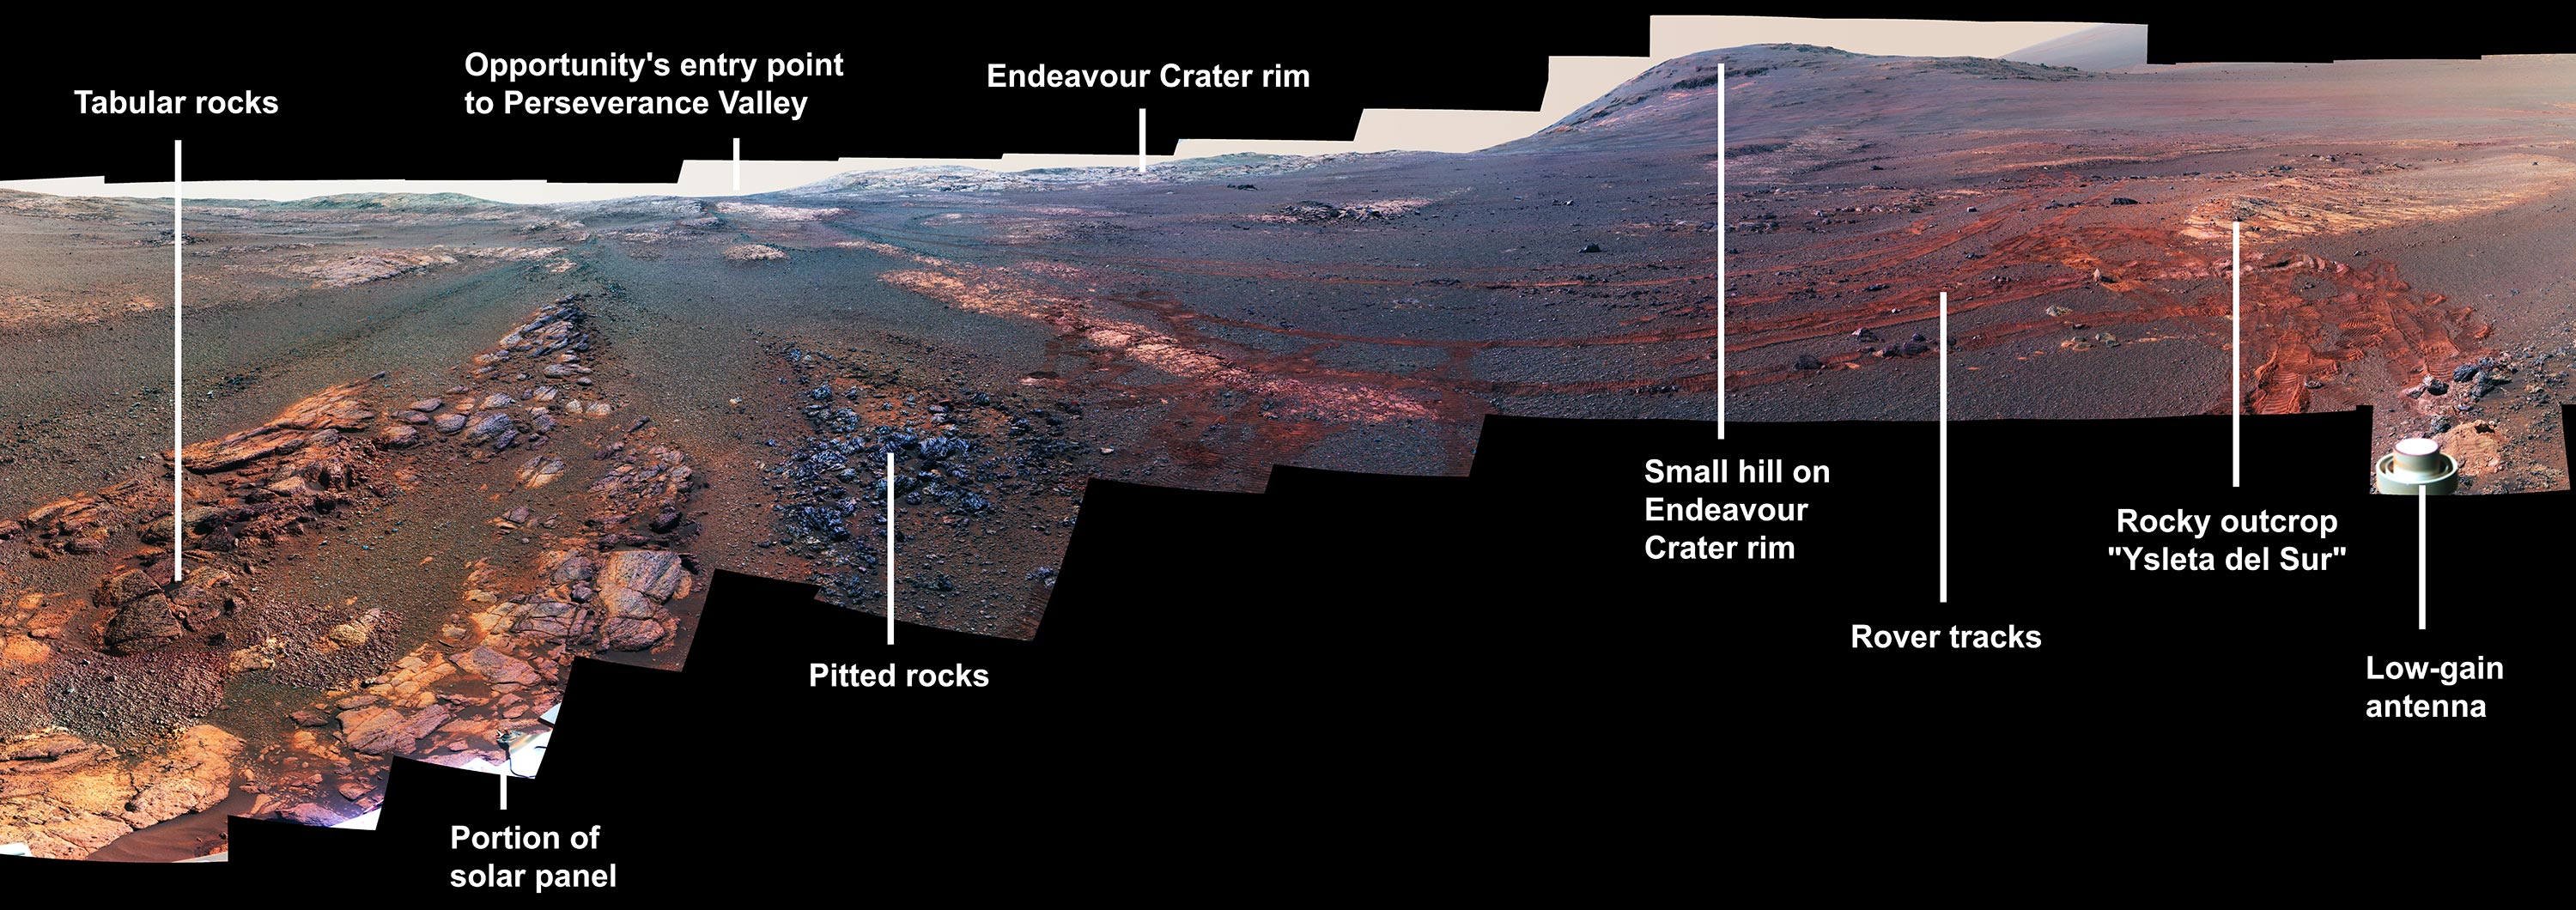 Opportunity'nin Mars'ta çektiği son fotoğraflar ortaya çıktı